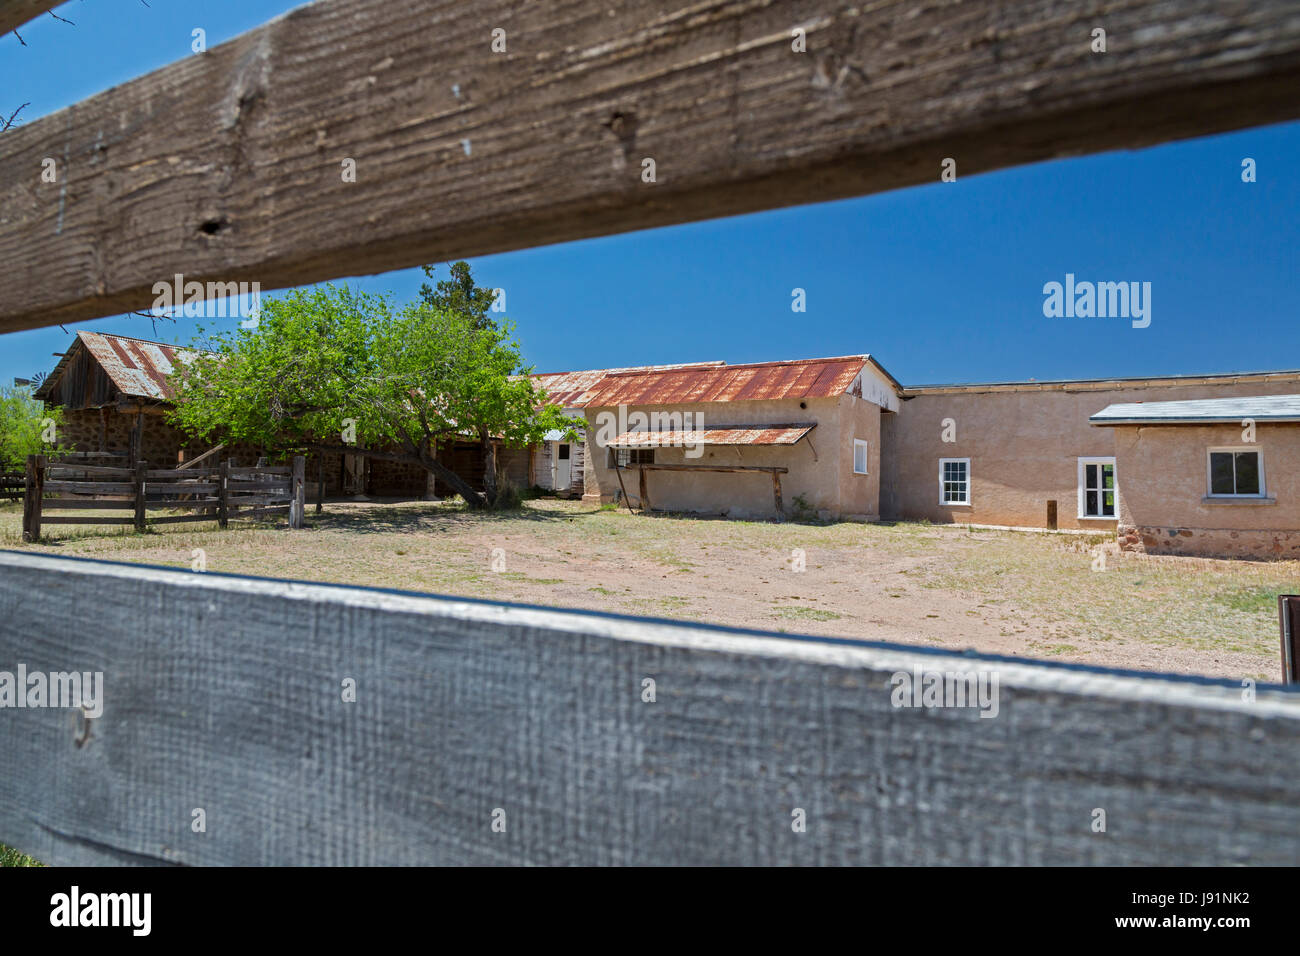 Sonoita, Arizona - der historische Empire Ranch, sobald eines der größten Rinder in Amerika Ranches. Die Ranch wird vom Bureau of Land Manag verwaltet. Stockfoto